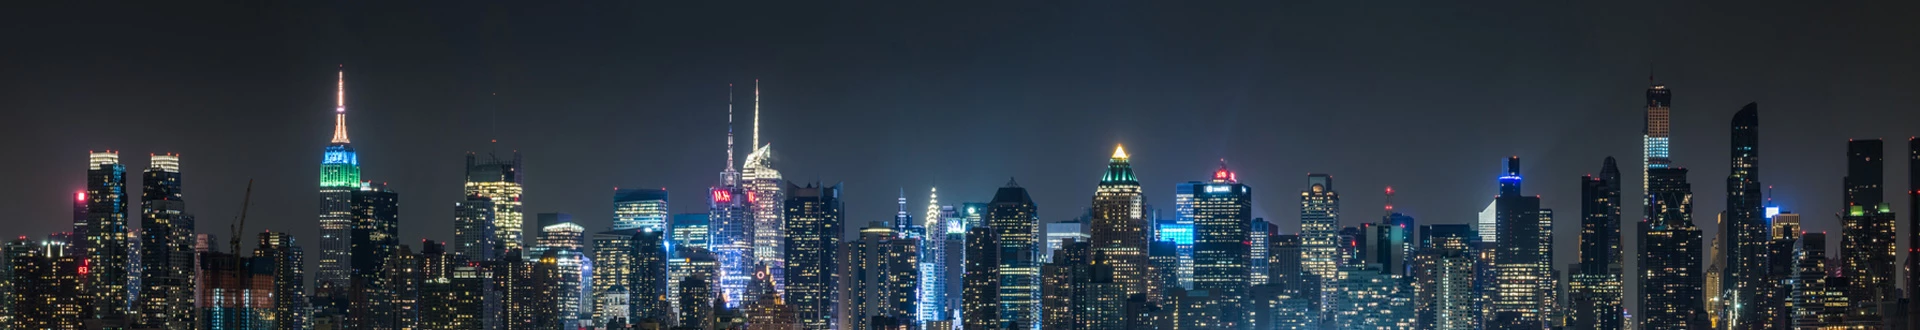 Nocna panorama miasta z wieżowcami